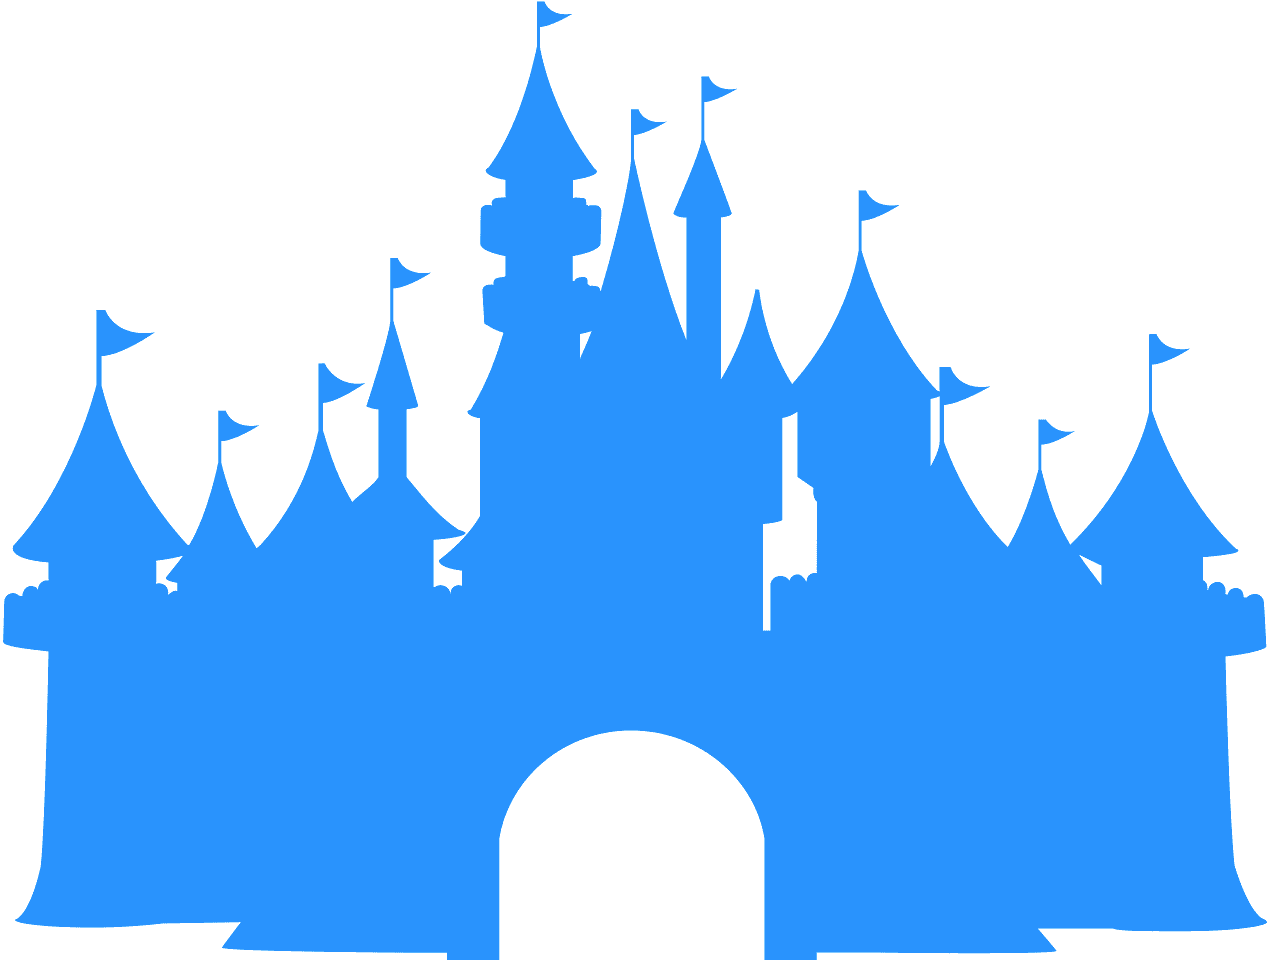 Download Disneyland clipart blue castle, Disneyland blue castle ...